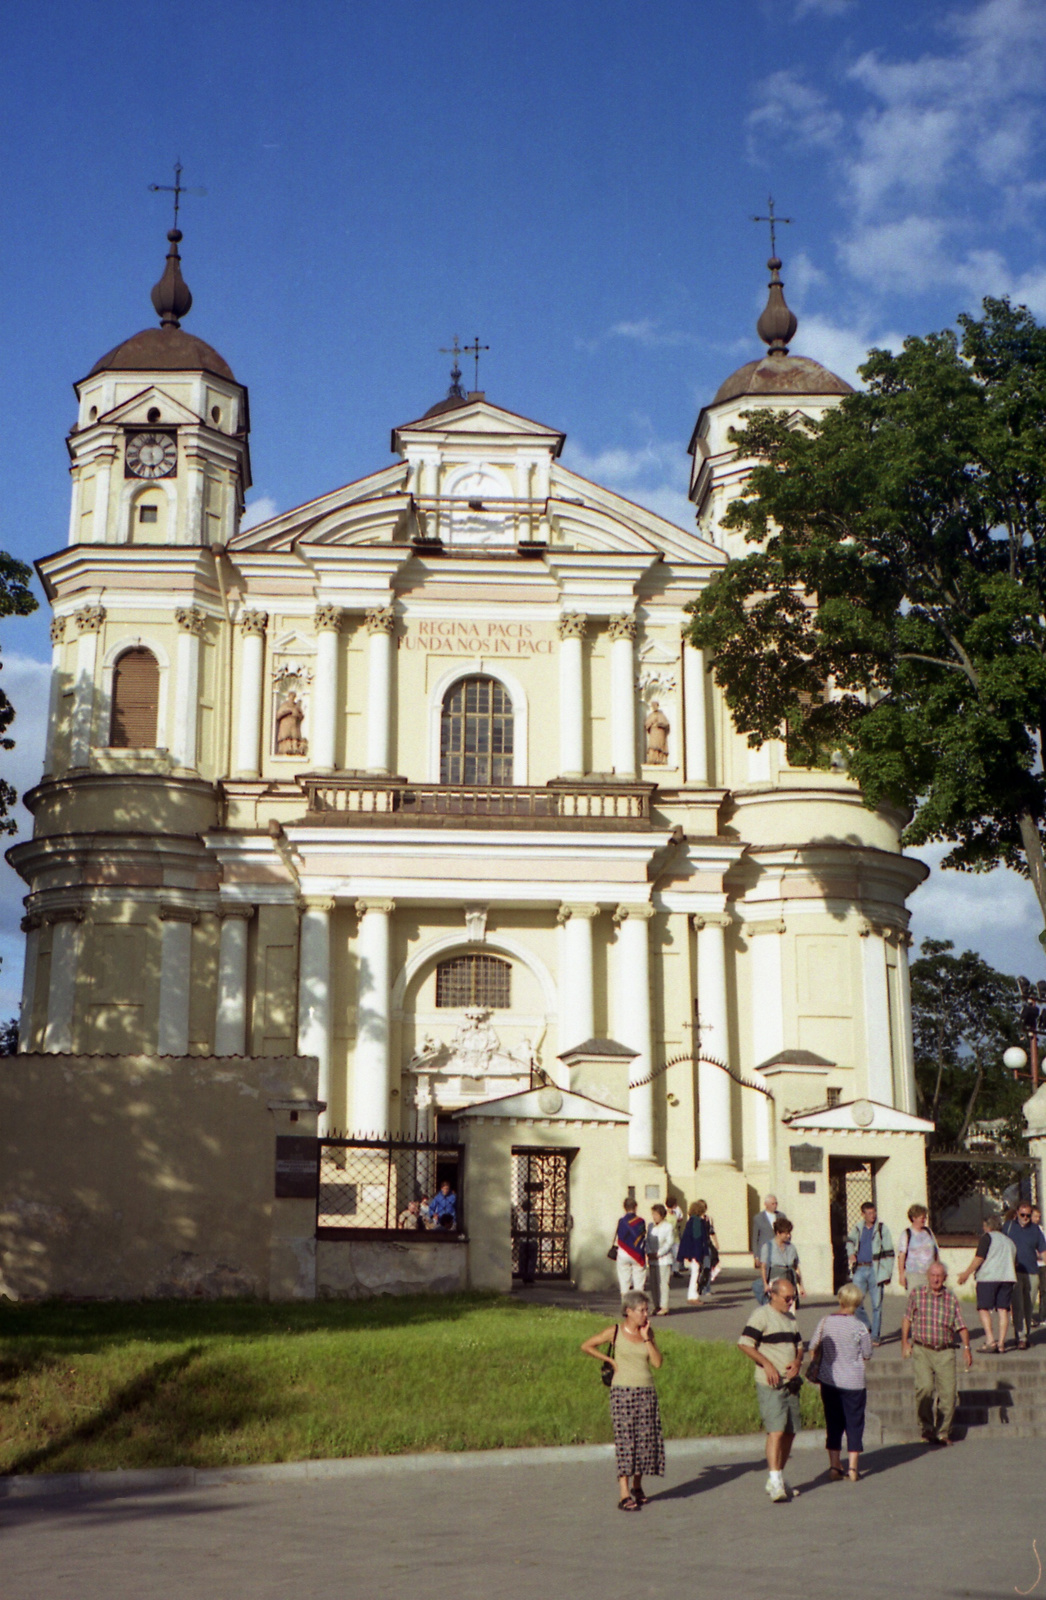 270 Vilnius Szt. Pál templom Litvánia